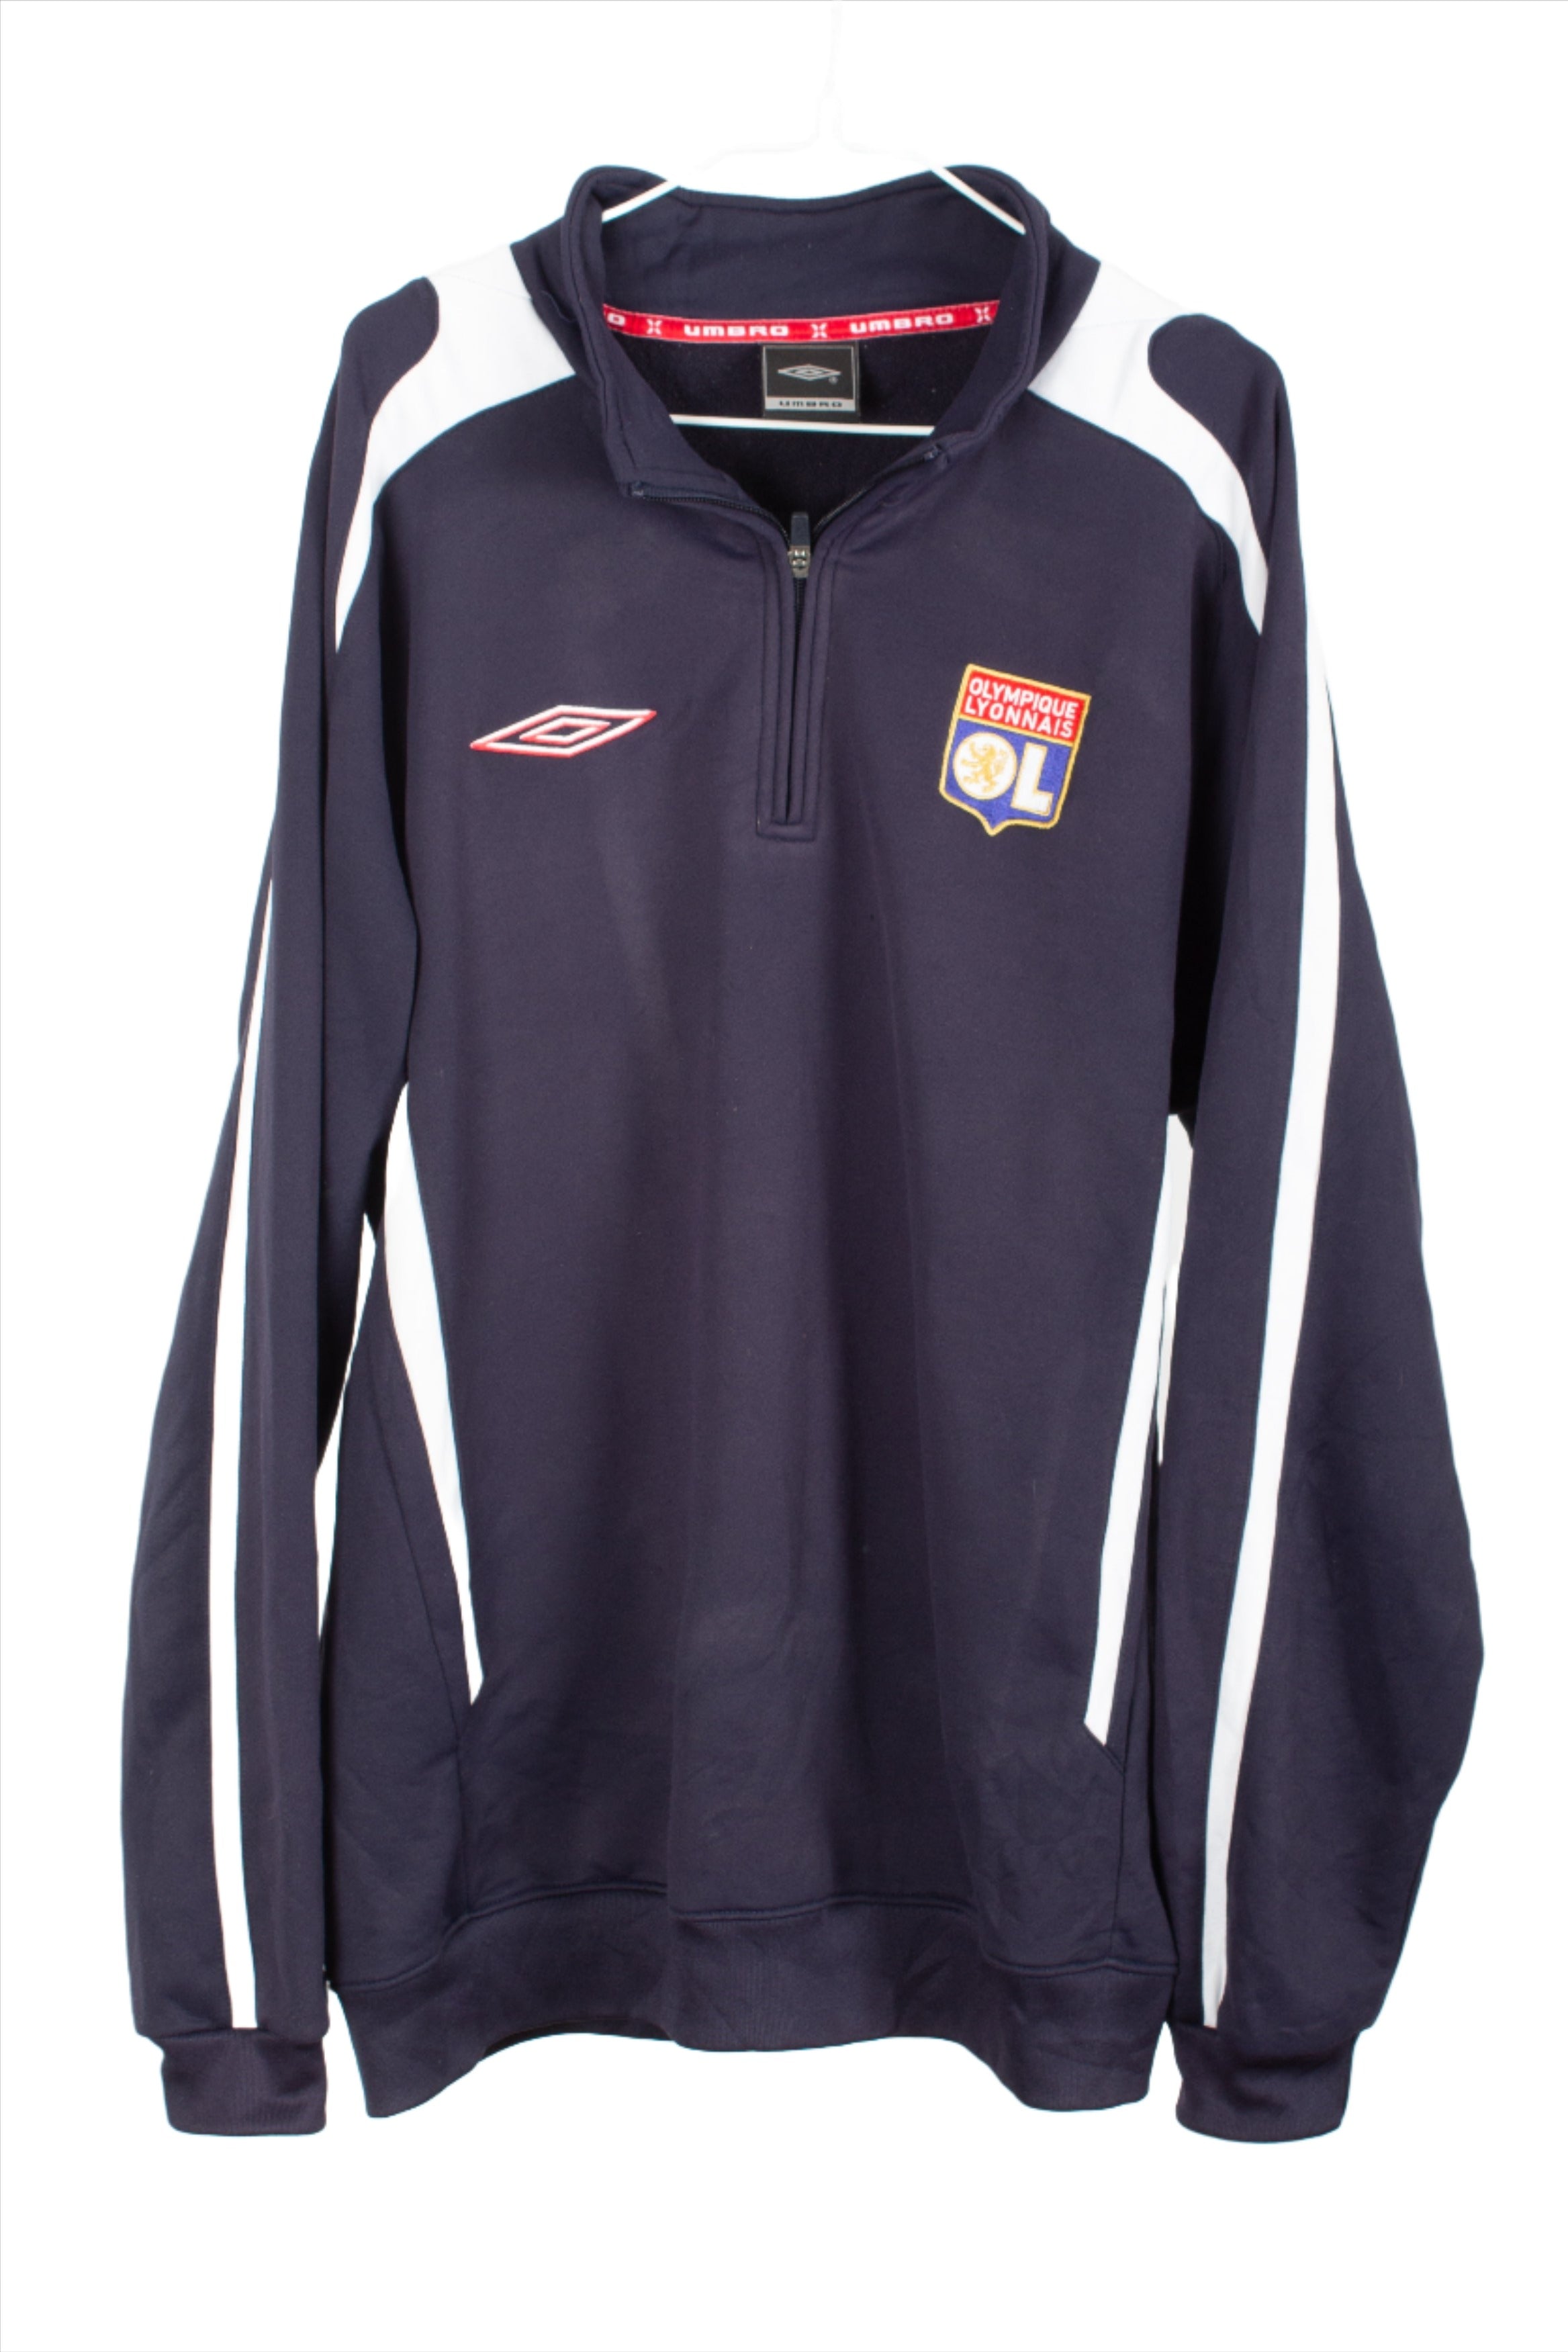 Olympique Lyonnais 2006/10 1/4 Zip Training Jacket (L)